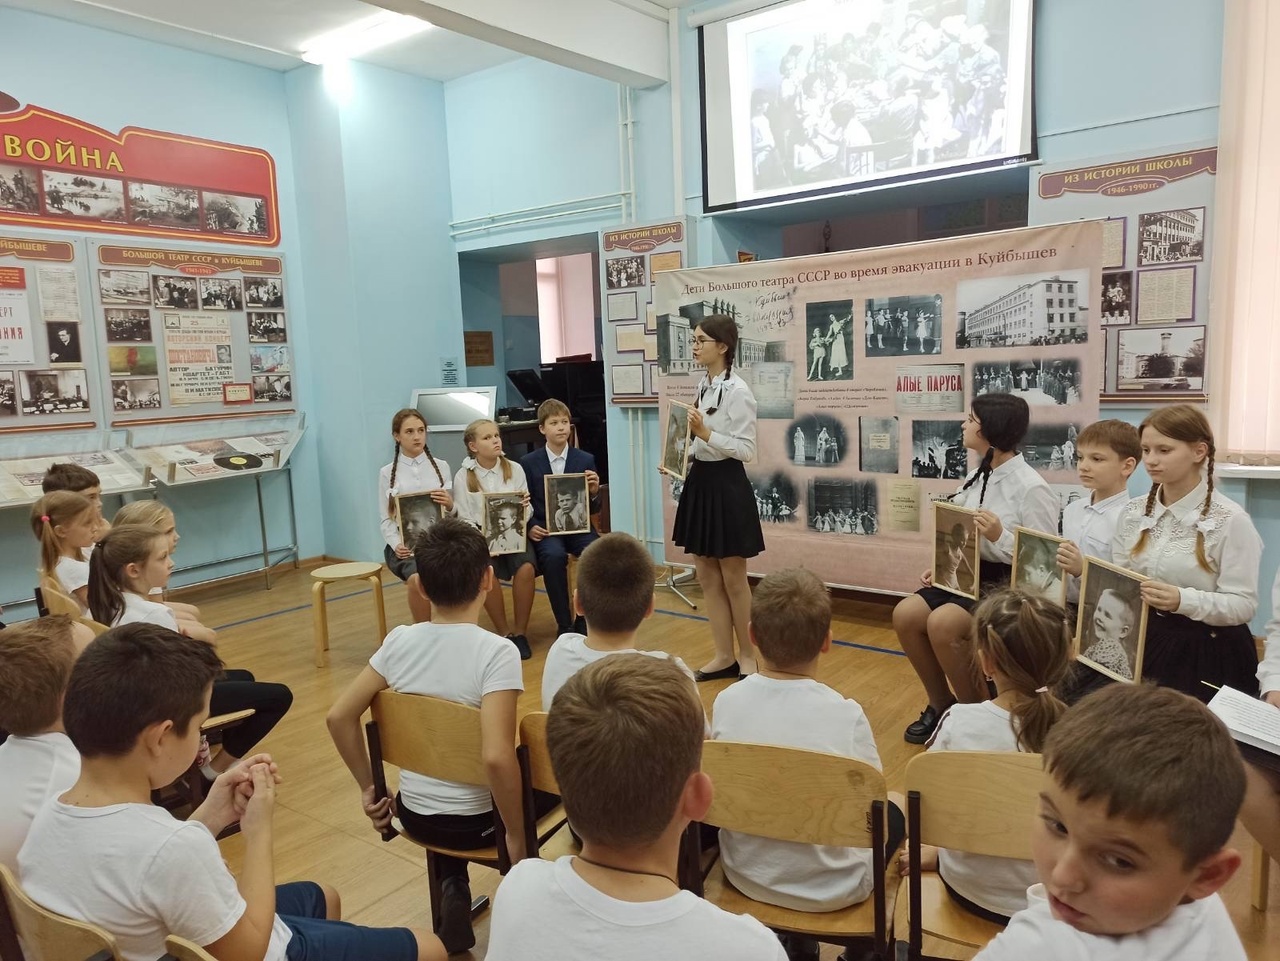 📌11, 12 и 13 октября в Музее школы проведено 33 Театрализованные экскурсии «Дети Большого театра во время эвакуации в Куйбышев».